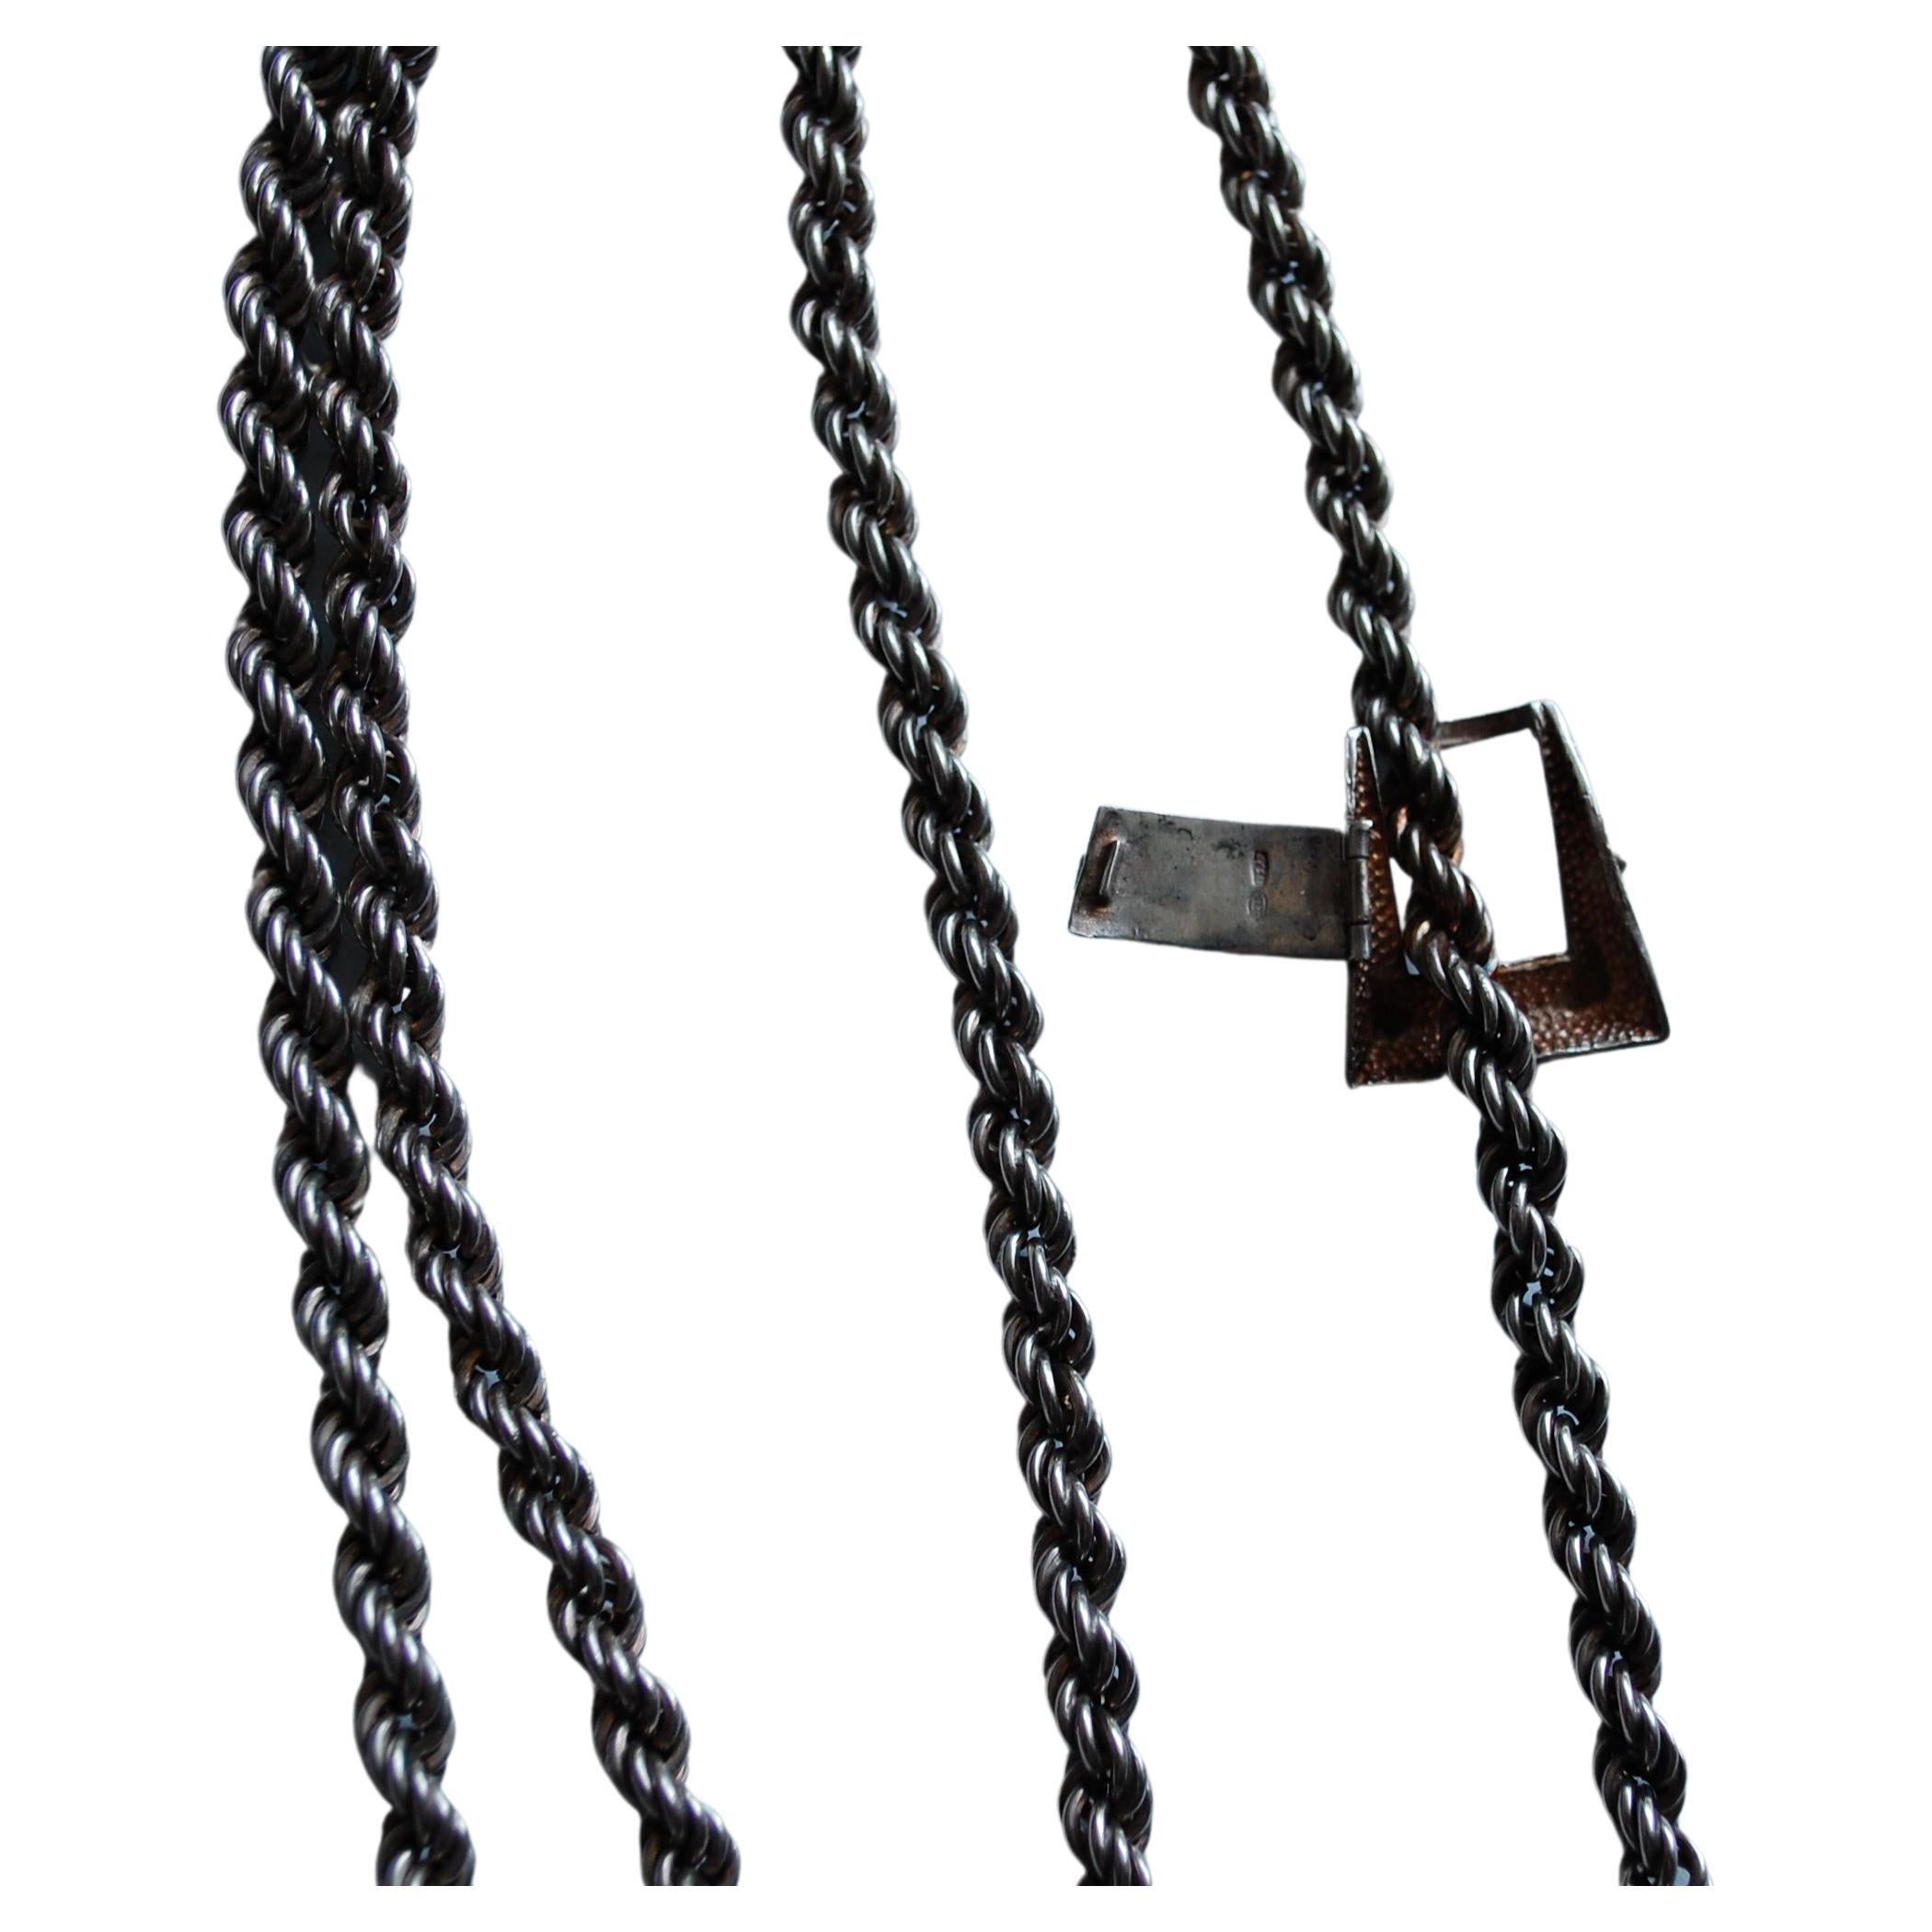 Vintage Italian sterling 925, 103 AR (Arezzo en Italie) collier de corde avec des franges sur chaque extrémité une boucle comme fermoir. Longueur totale 43 pouces, largeur 0,25 environ 100 grammes. Vous avez le choix entre le porter long ou court.